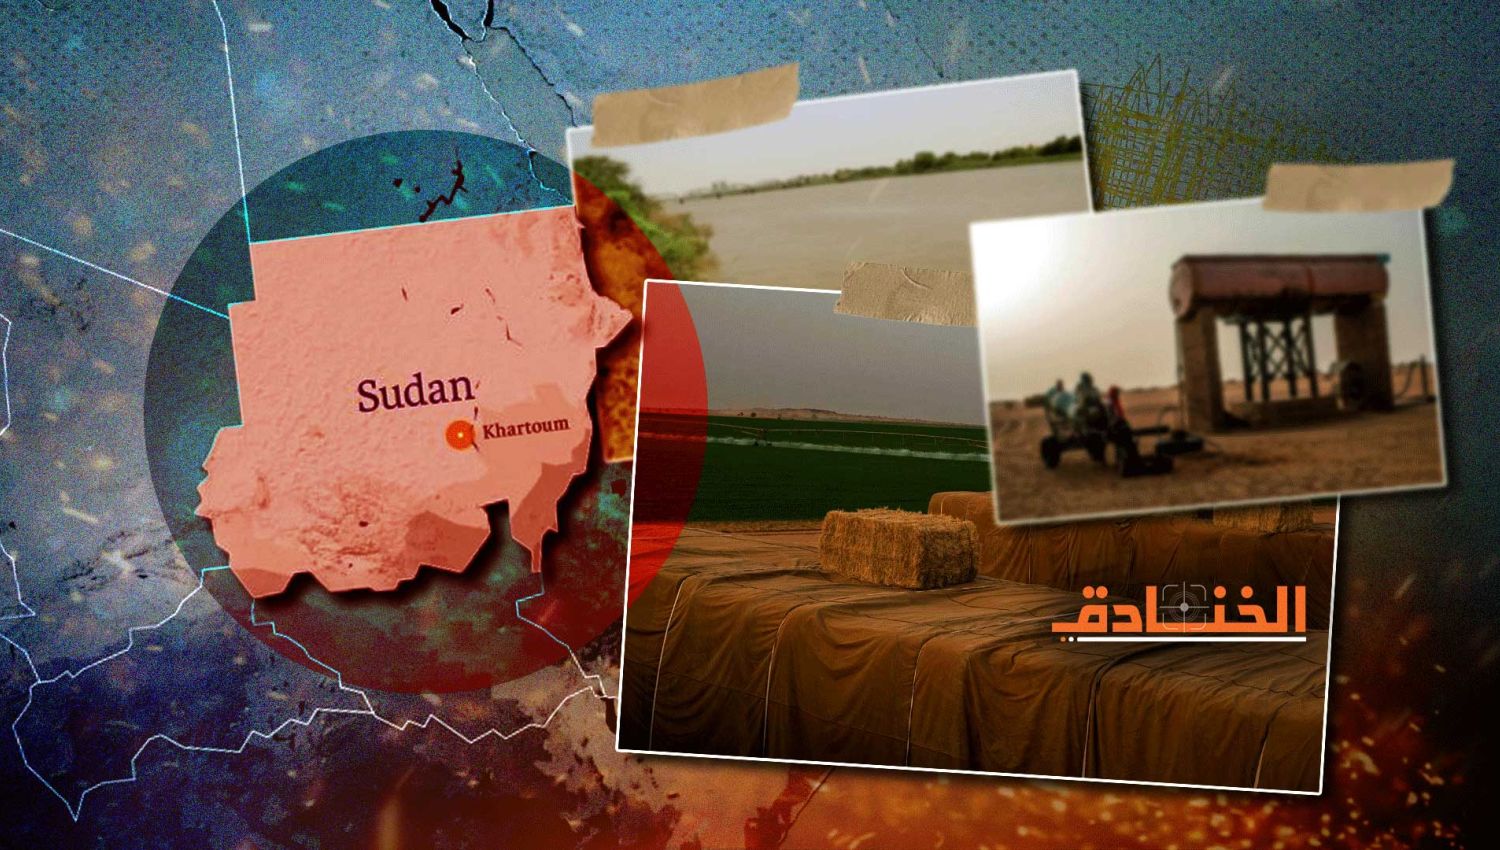 الاستيلاء على الأراضي الزراعية السودانية: لماذا دول الخليج؟